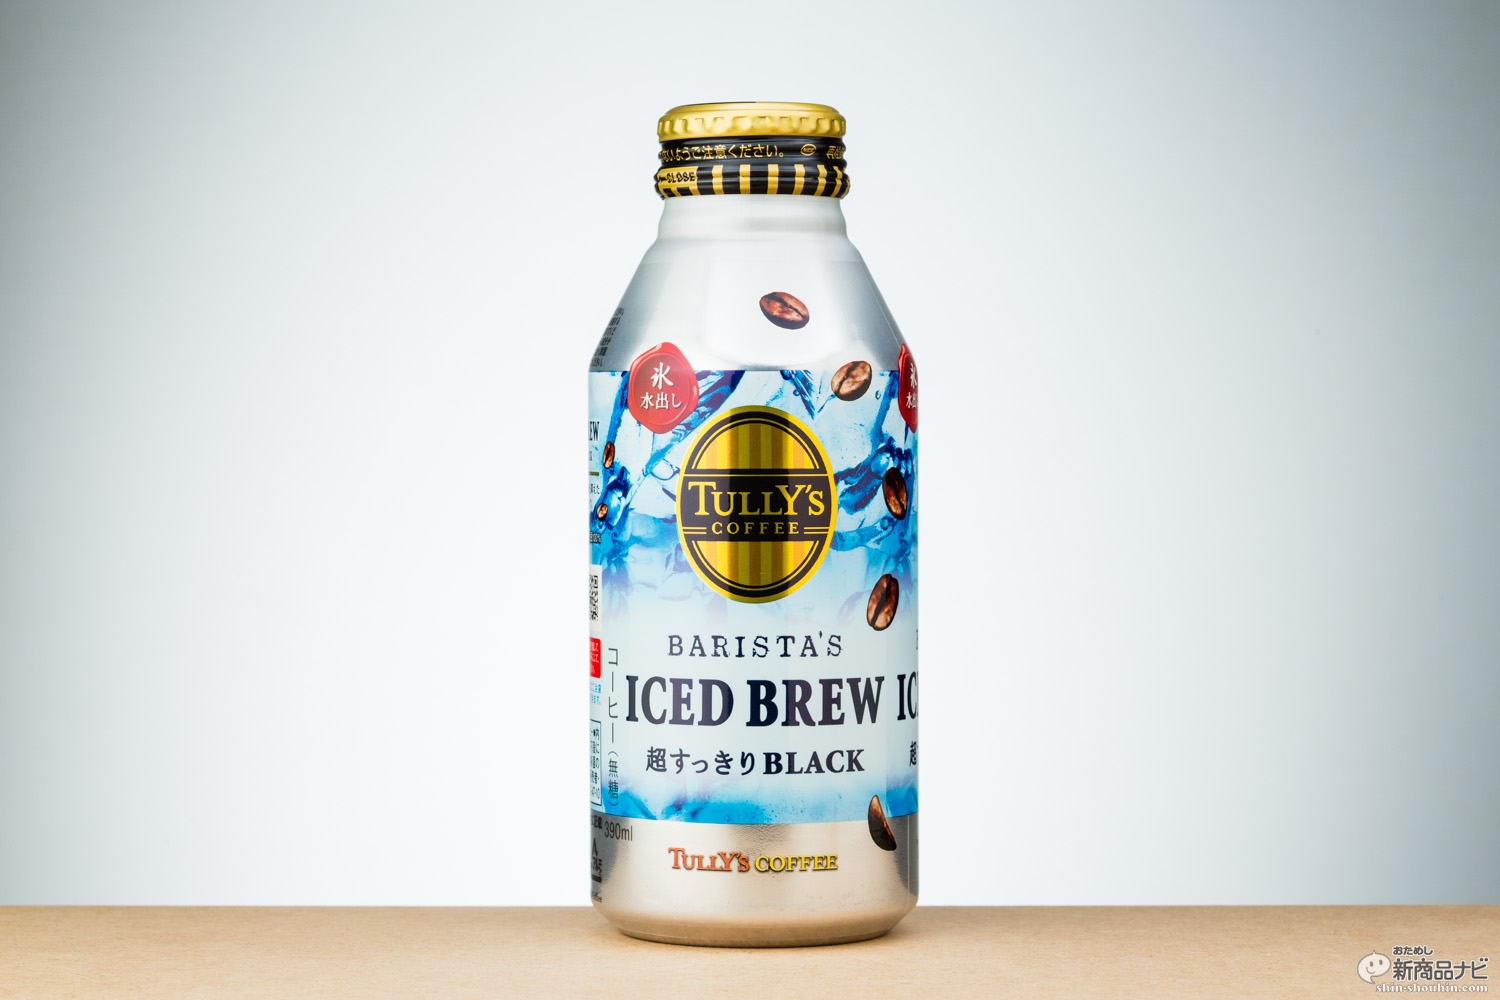 おためし新商品ナビ » Blog Archive » 『TULLY'S COFFEE BARISTA'S ICED BREW』タリーズなのに苦くない!?  新機軸・氷水出しコーヒーが登場！